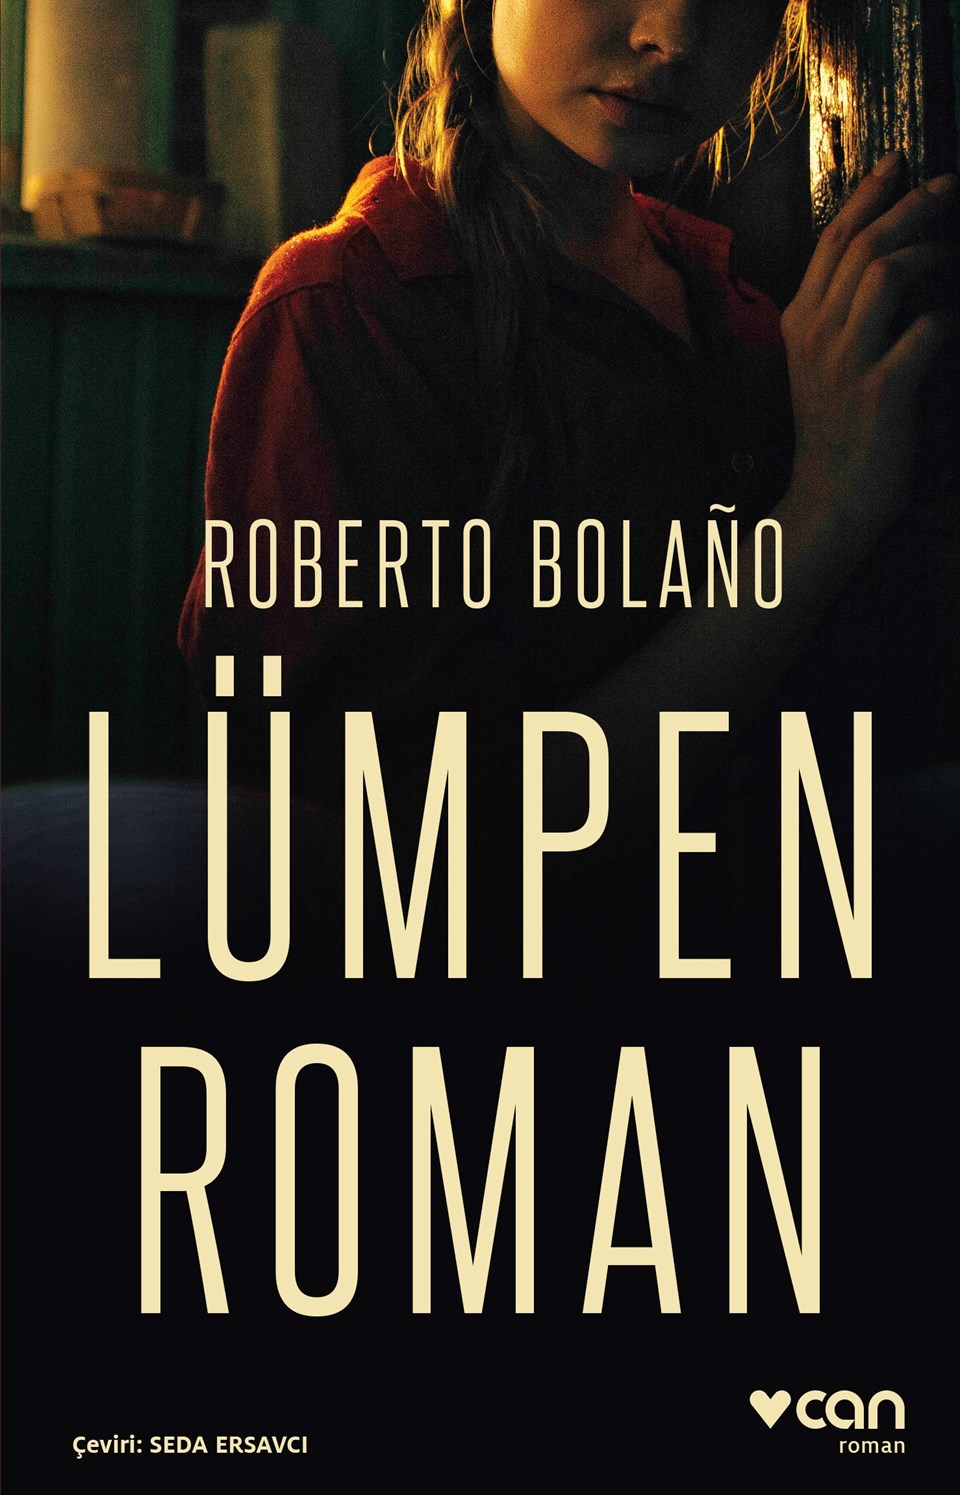 Latin Amerika edebiyatının en çok konuşulan yazarlarından Roberto Bolaño’dan Lümpen Roman - 1